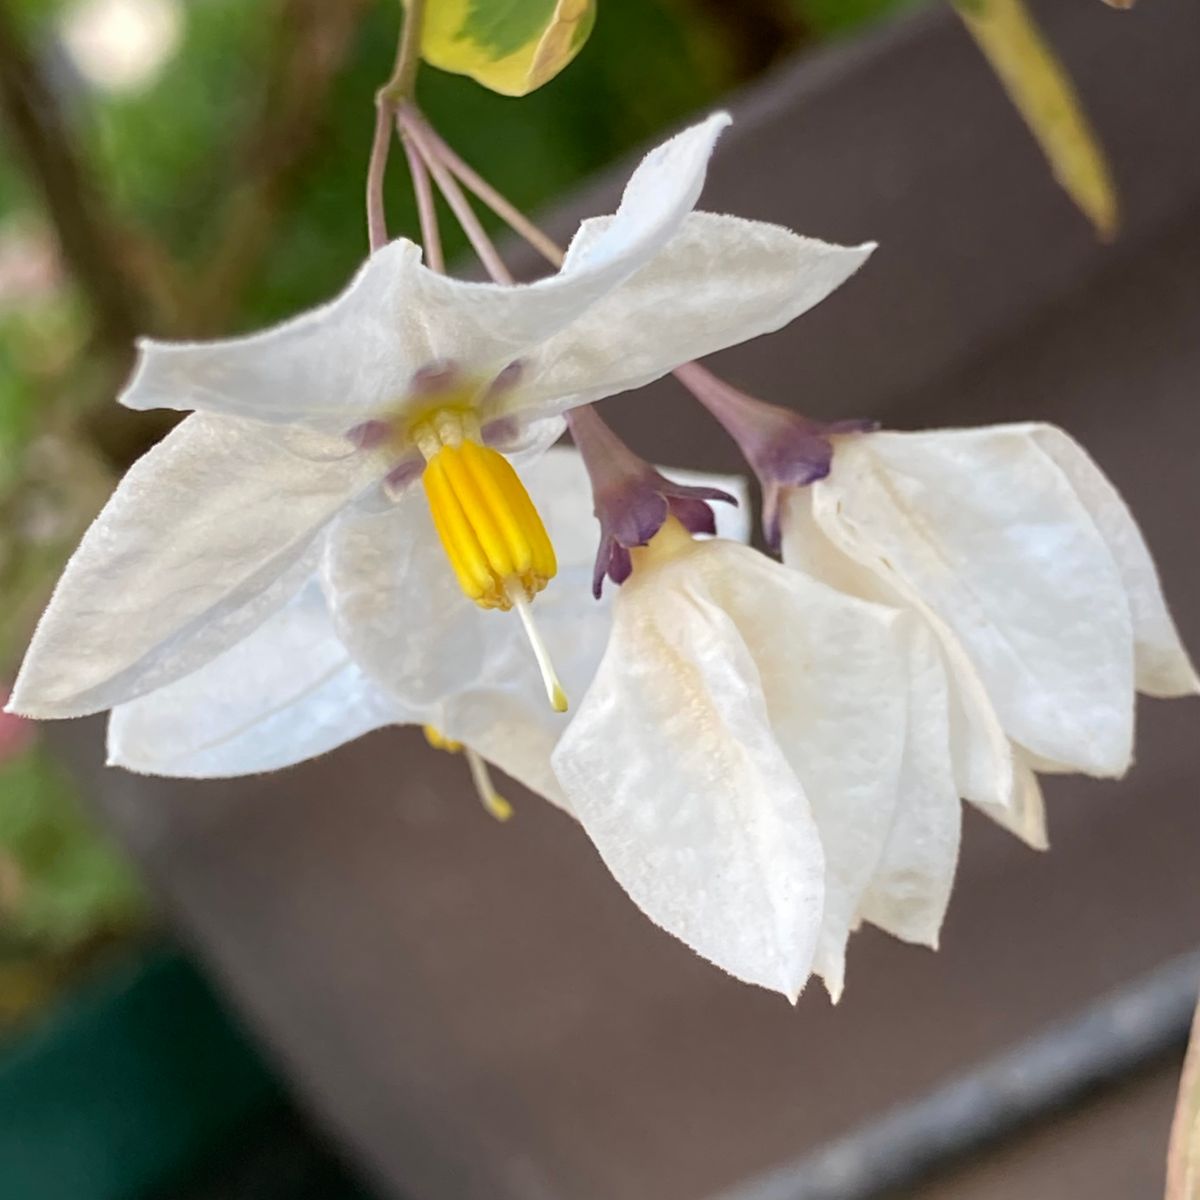 斑入ツルハナナス Solanumjasminoides 庭に咲く花season17 のアルバム みんなの趣味の園芸